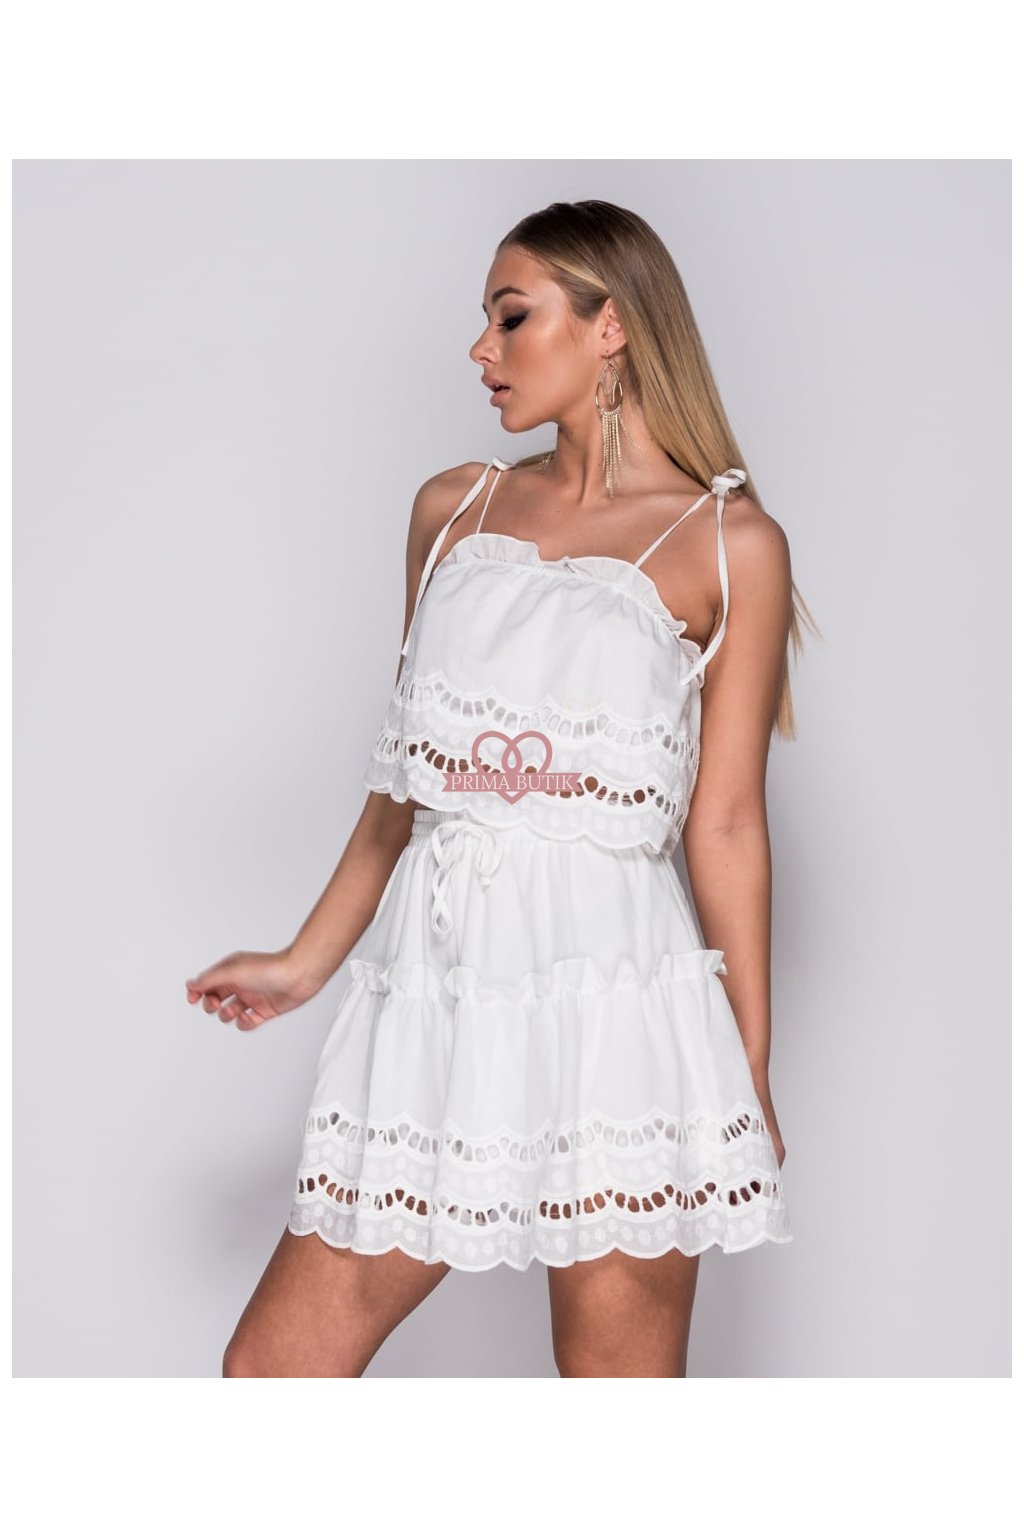 Bílá krajková sukně s topem - PRIMA BUTIK